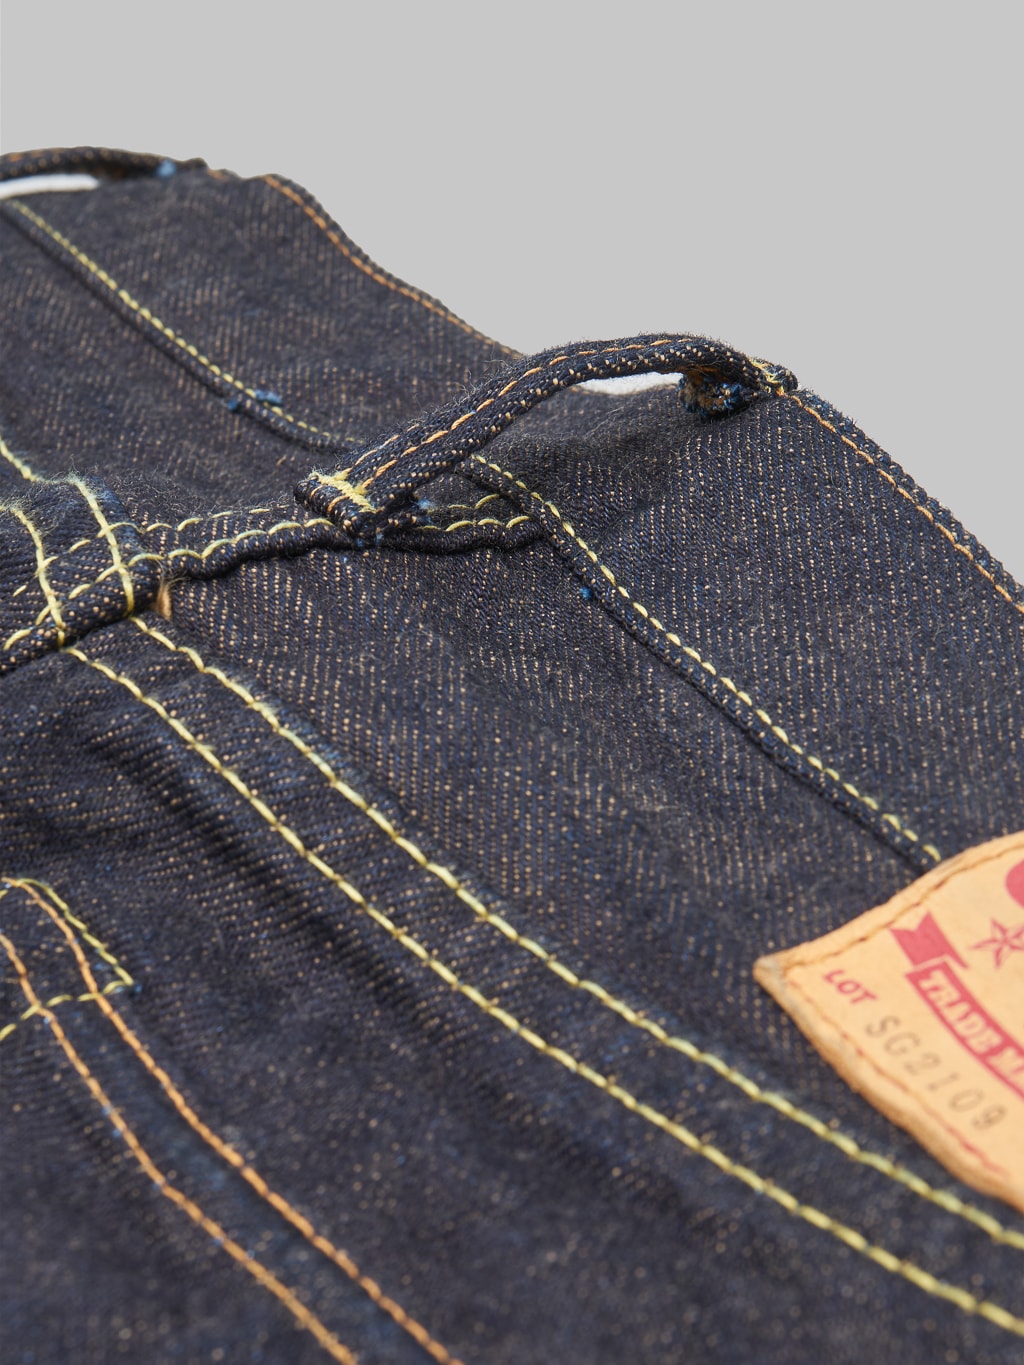 The Strike Gold Brown Weft Slim Tapered Jeans belt loop